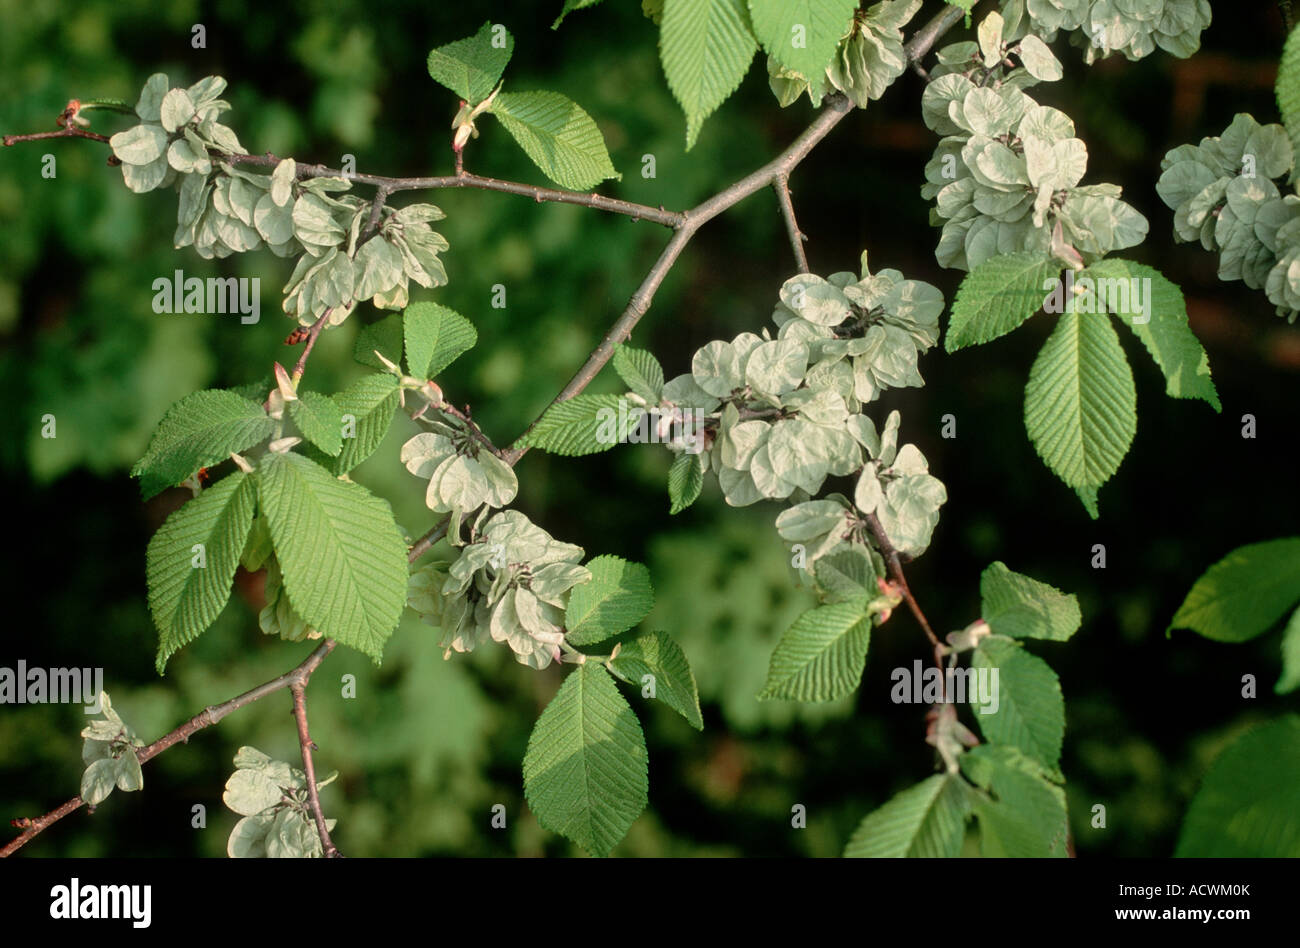 Scotch elm, wych elm (Ulmus glabra, Ulmus scabra), branch with fruis, Germany Stock Photo